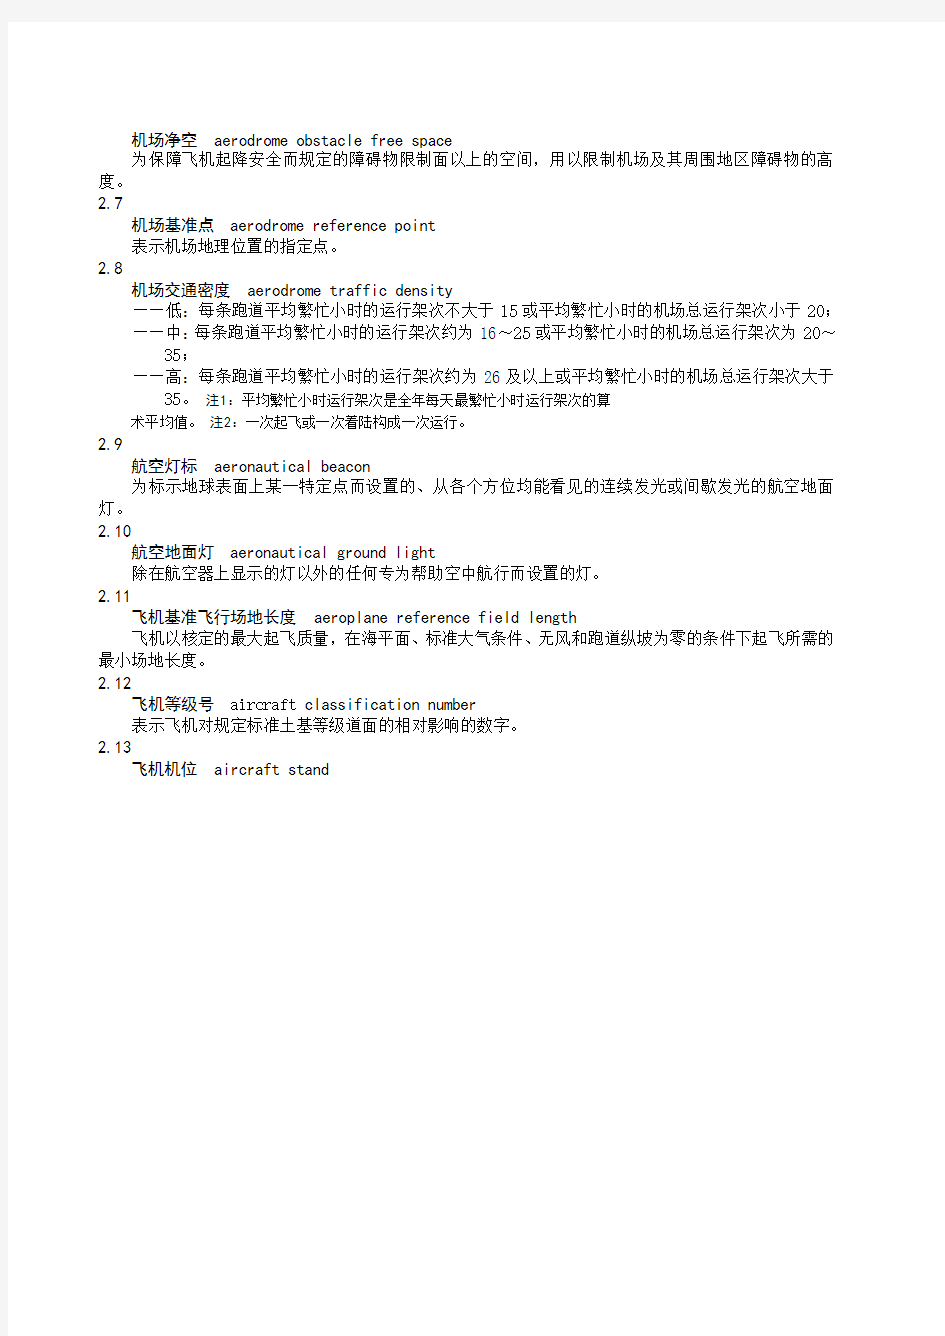 MH 5001—2019民用机场飞行区技术标准共149页word资料